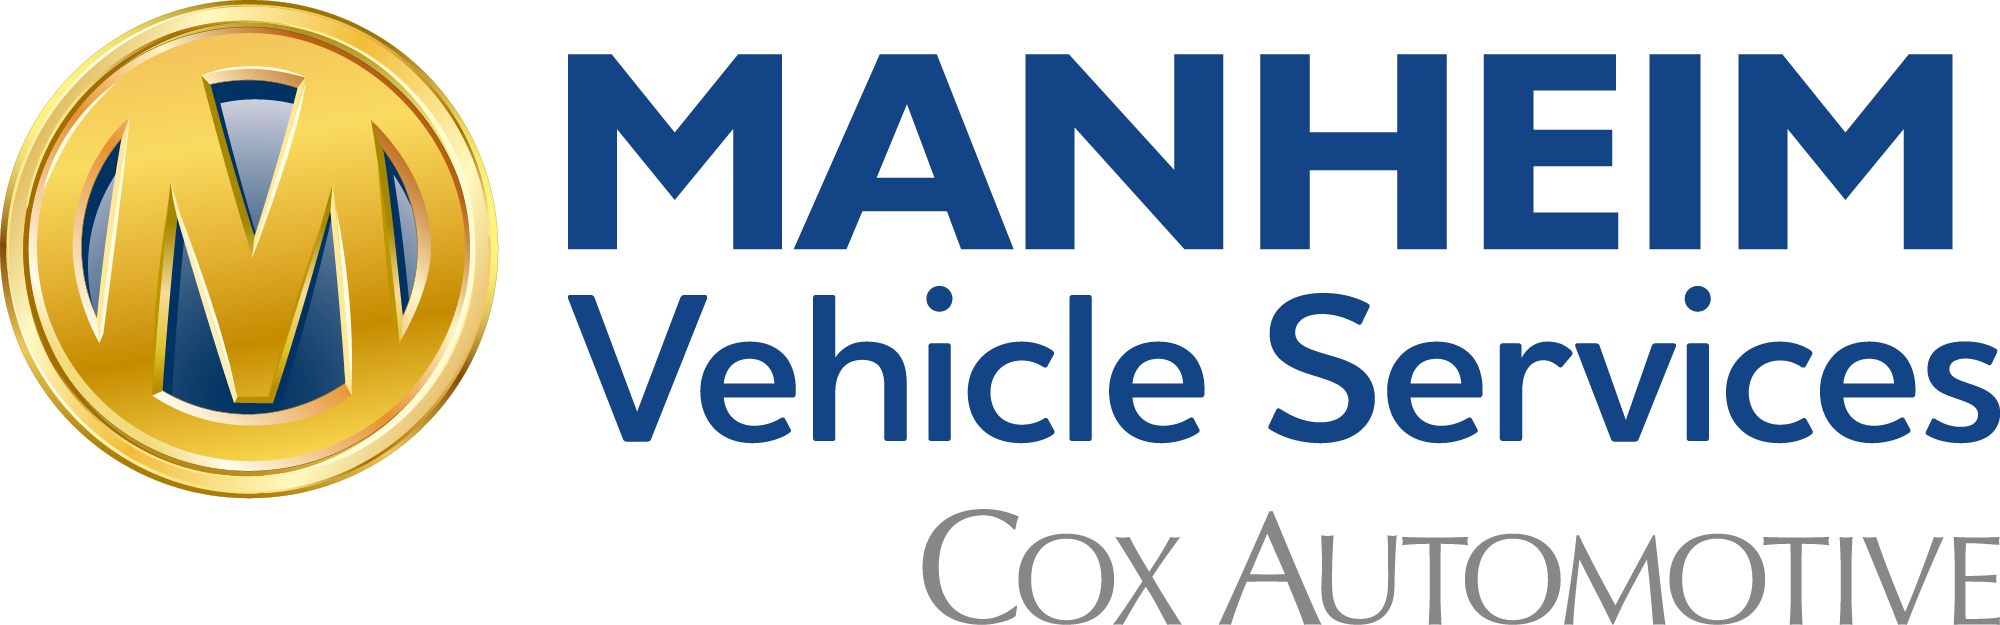 Manheim Vehicle Services